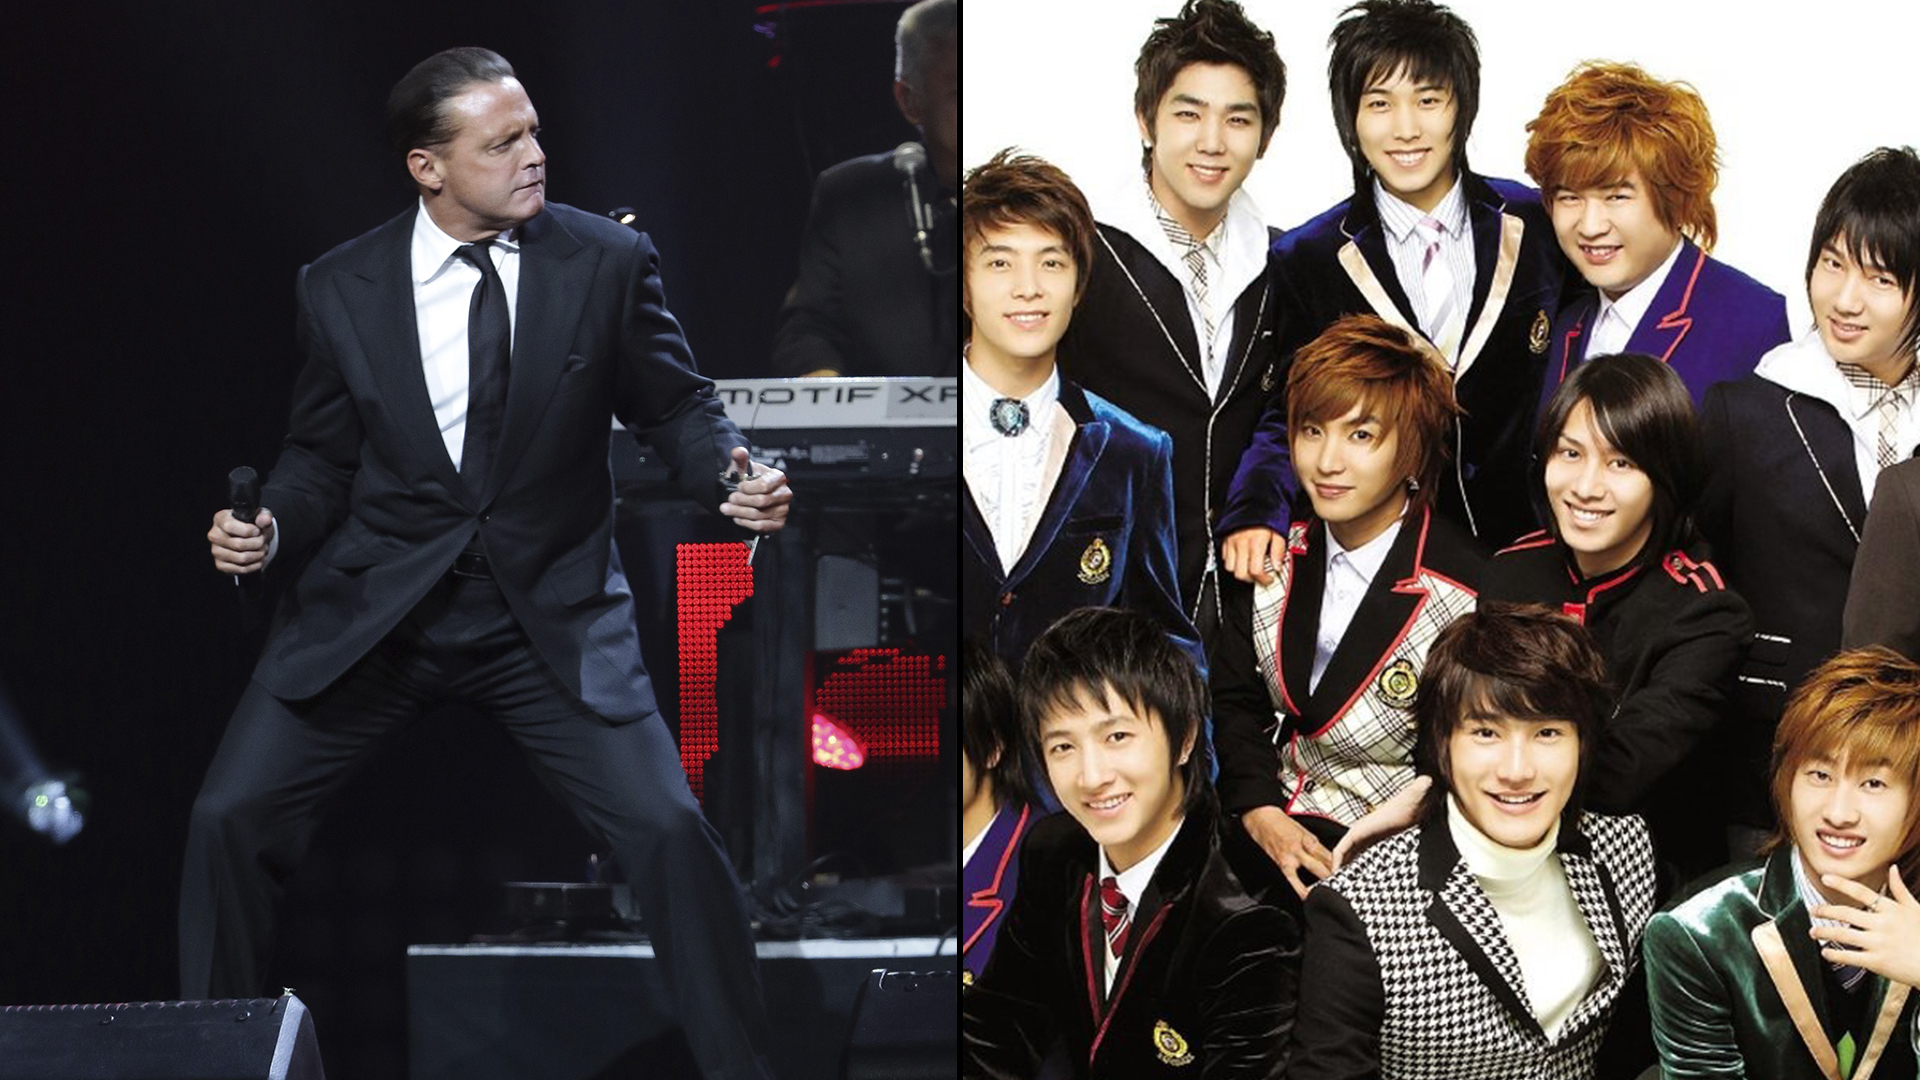 La música de Luis Miguel se convirtió en una gran influencia en la boy band coreana Super Junior. (Foto: Video: YouTube Gdx Iver)